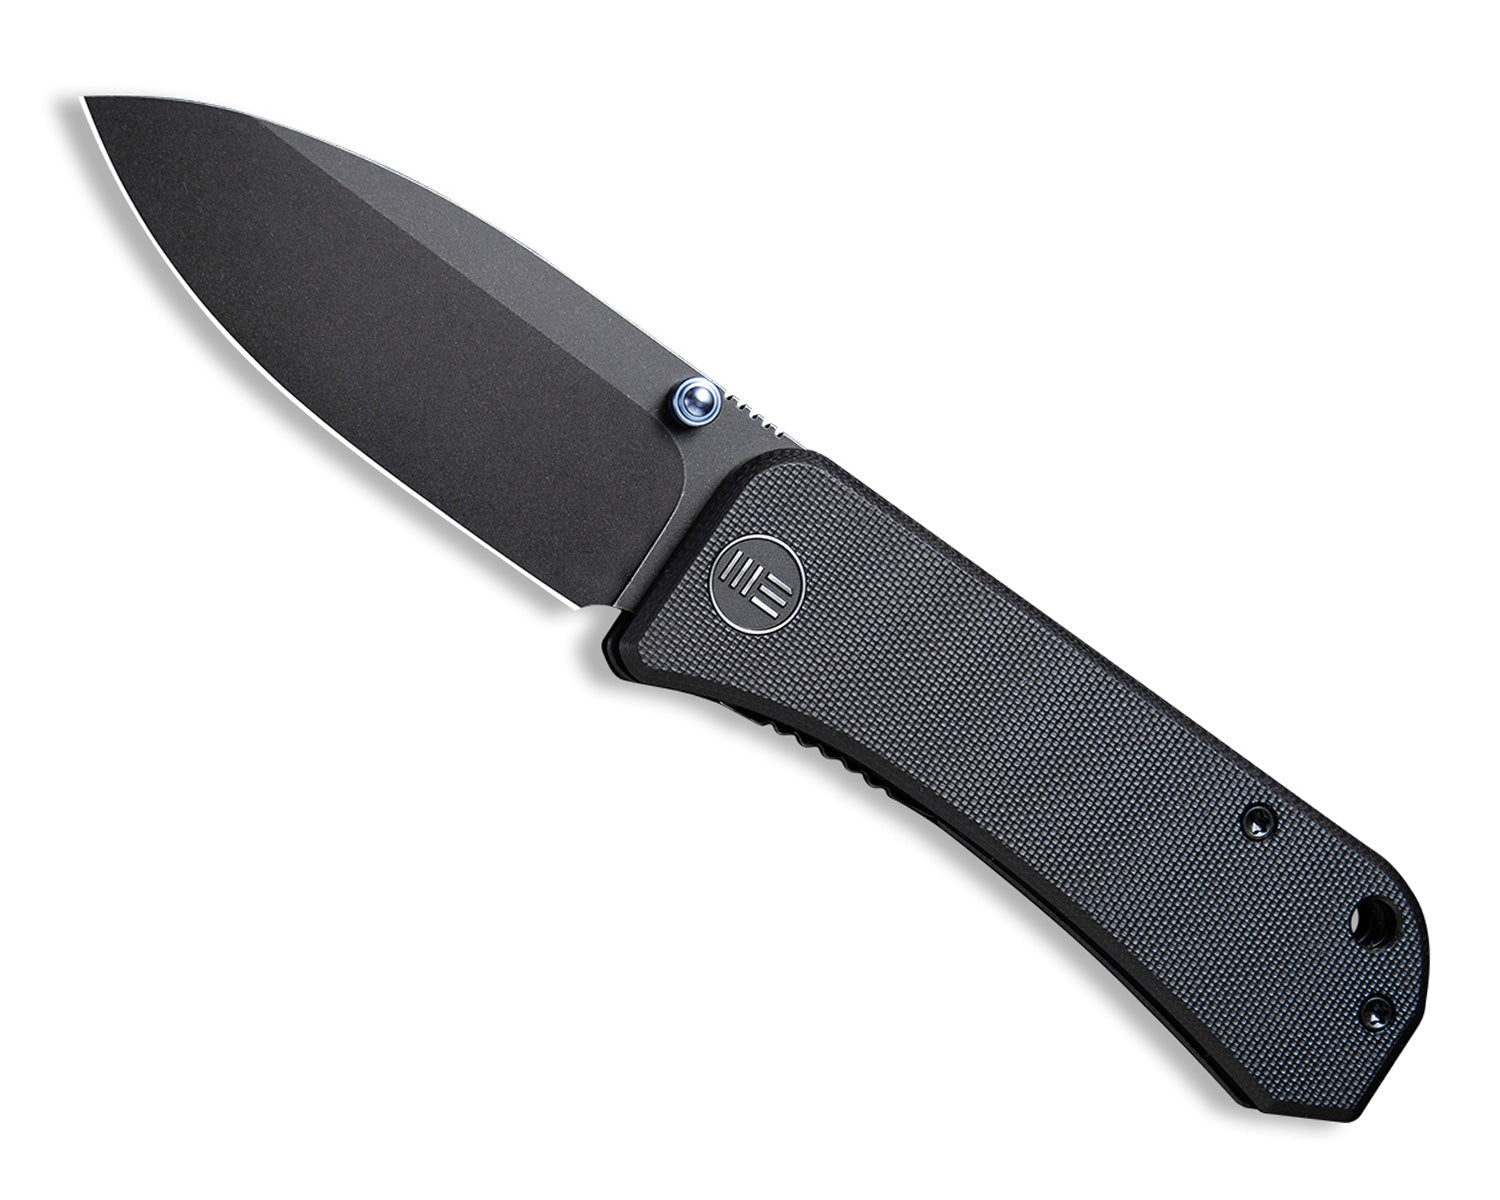 Banter Pocket Knife - Blackout - S35VN